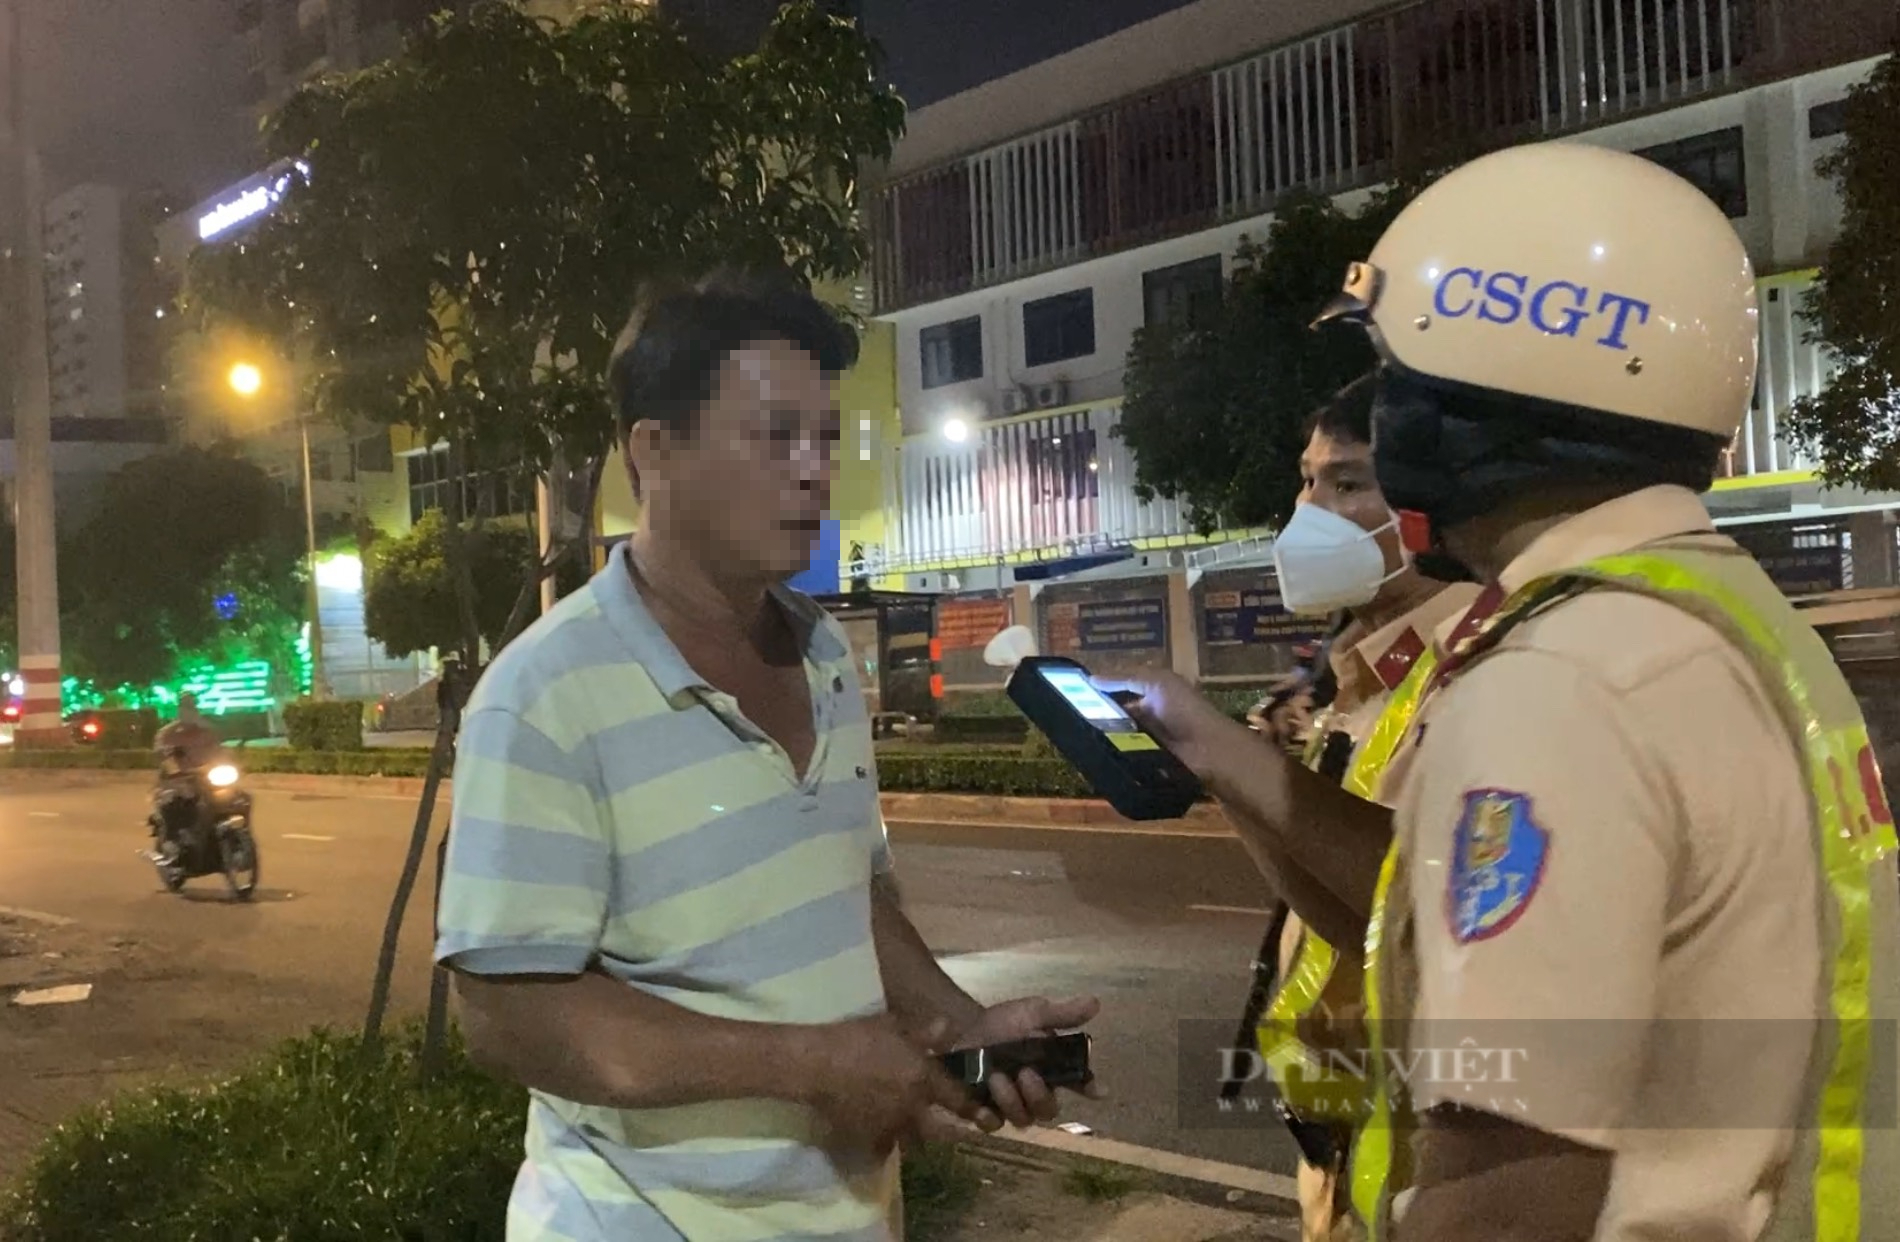 Nhậu say ở quận Tân Phú, bị CSGT quận 11 thổi nồng độ cồn người đàn ông nói “CSGT bậy rồi”- Ảnh 1.